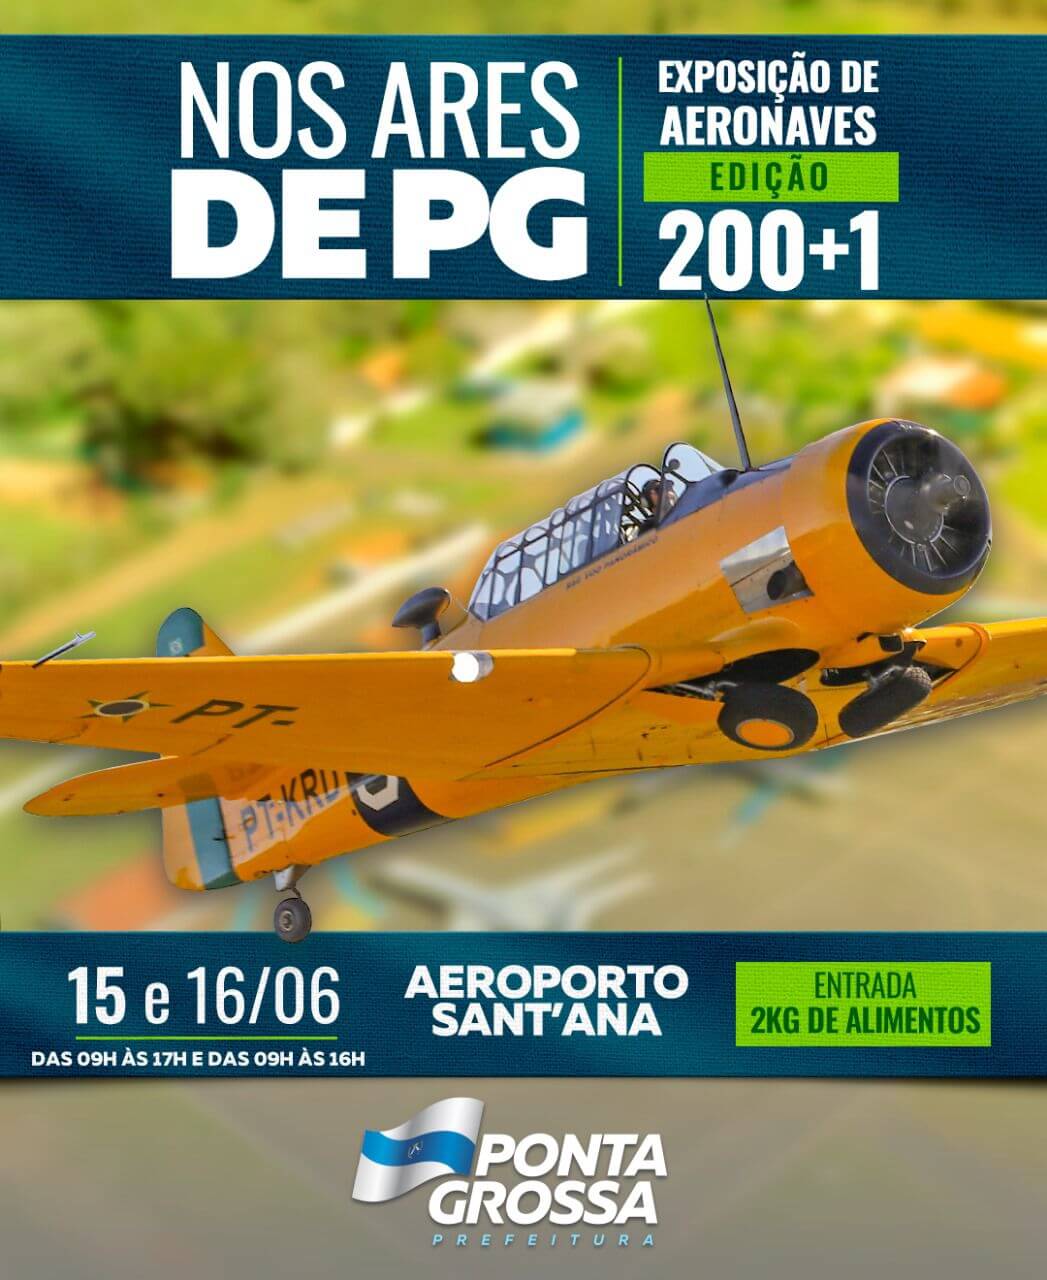 “Nos Ares de PG” prepara nova exposição no Aeroporto Sant’Ana